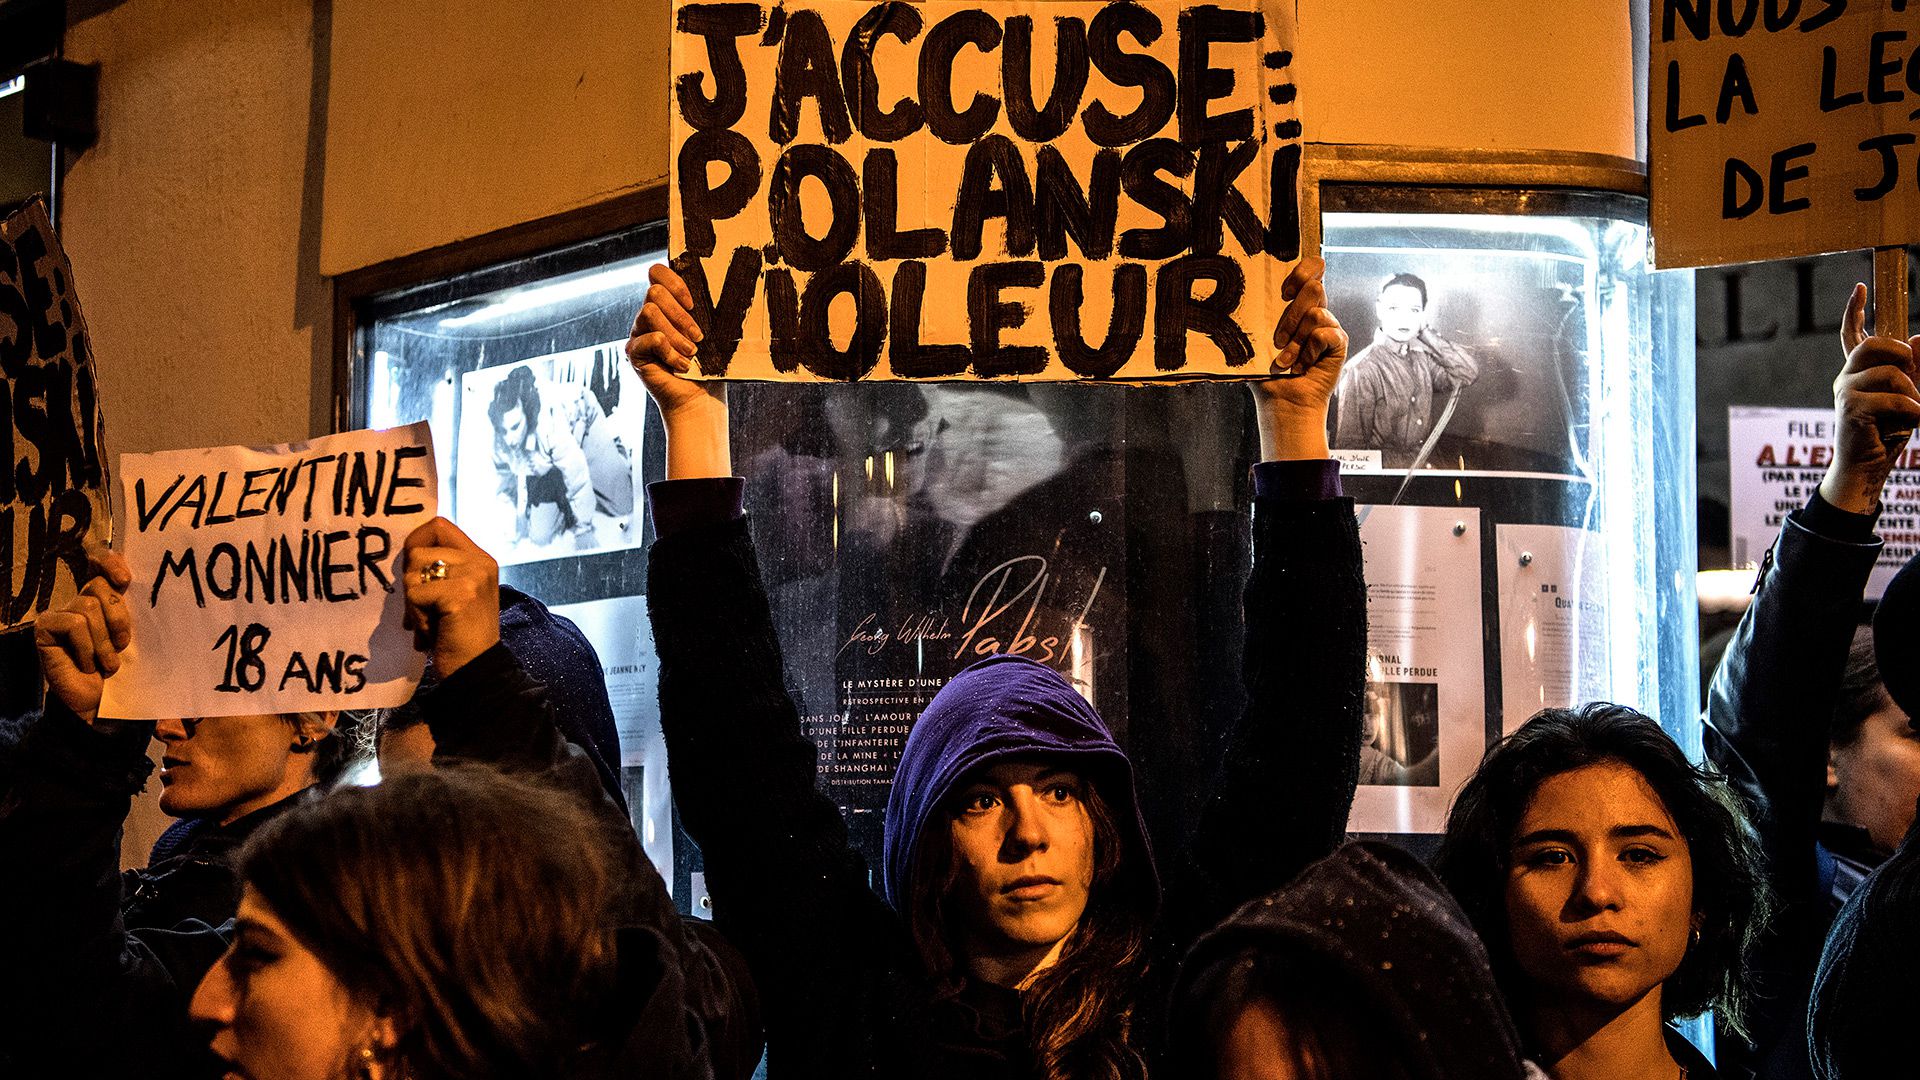 El filme de Polanski recibió protestas en diferentes salas de Francia. "Polanski violador", dice una pancarta (AFP)